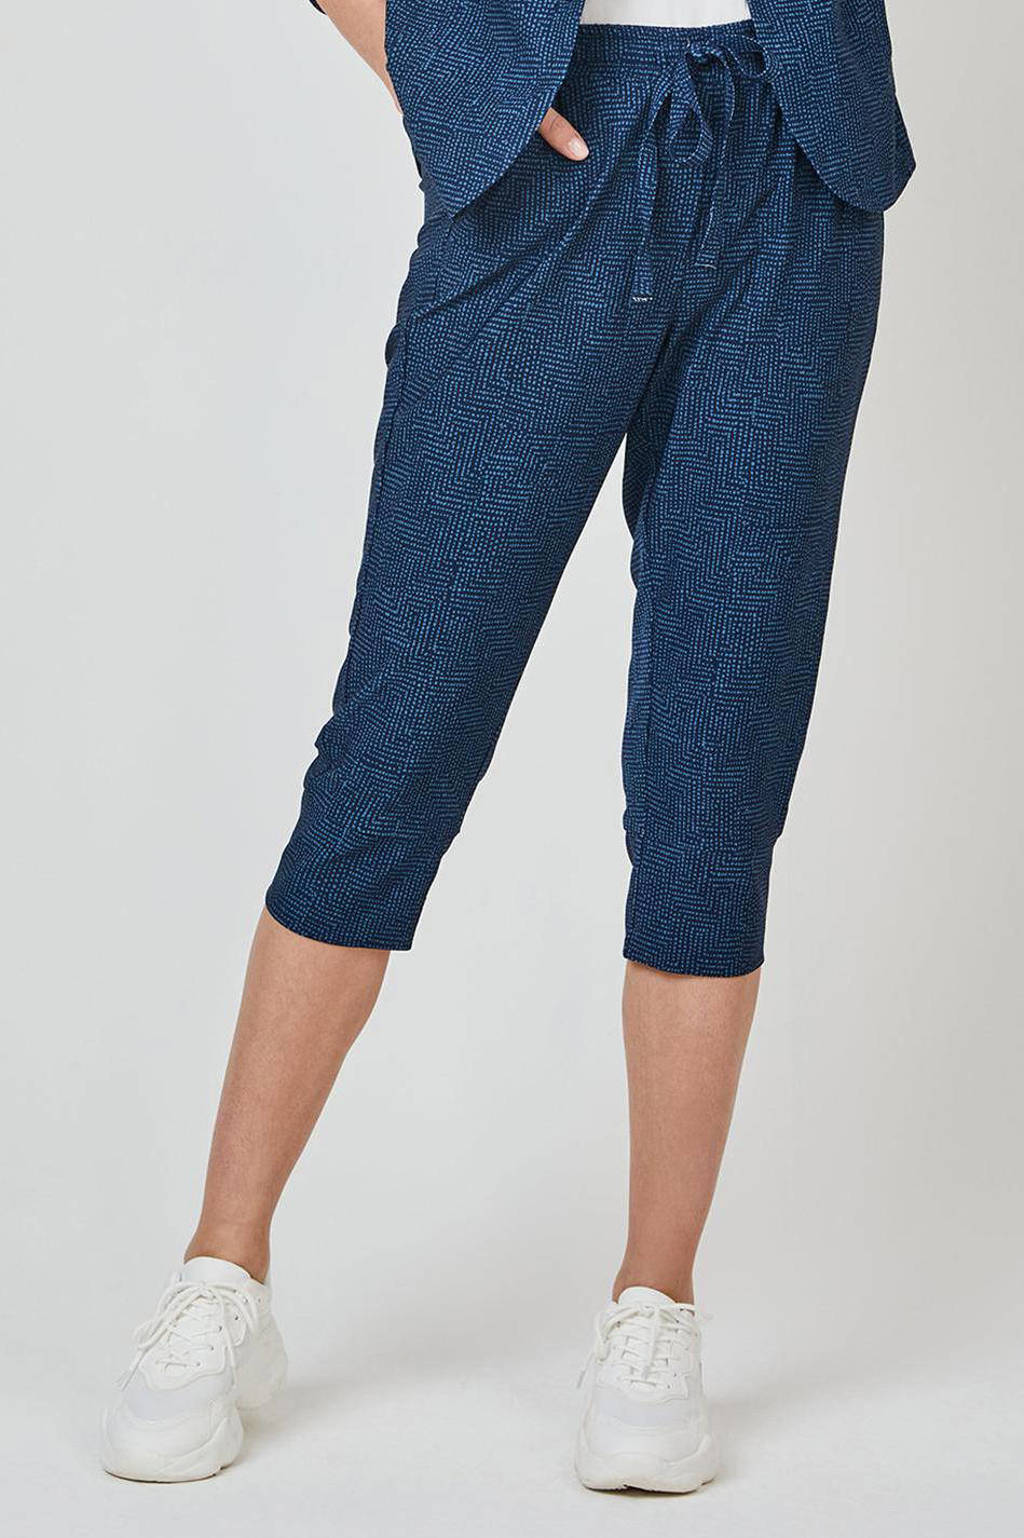 Blauwe dames Didi tapered fit broek van travelstof met regular waist en elastische tailleband